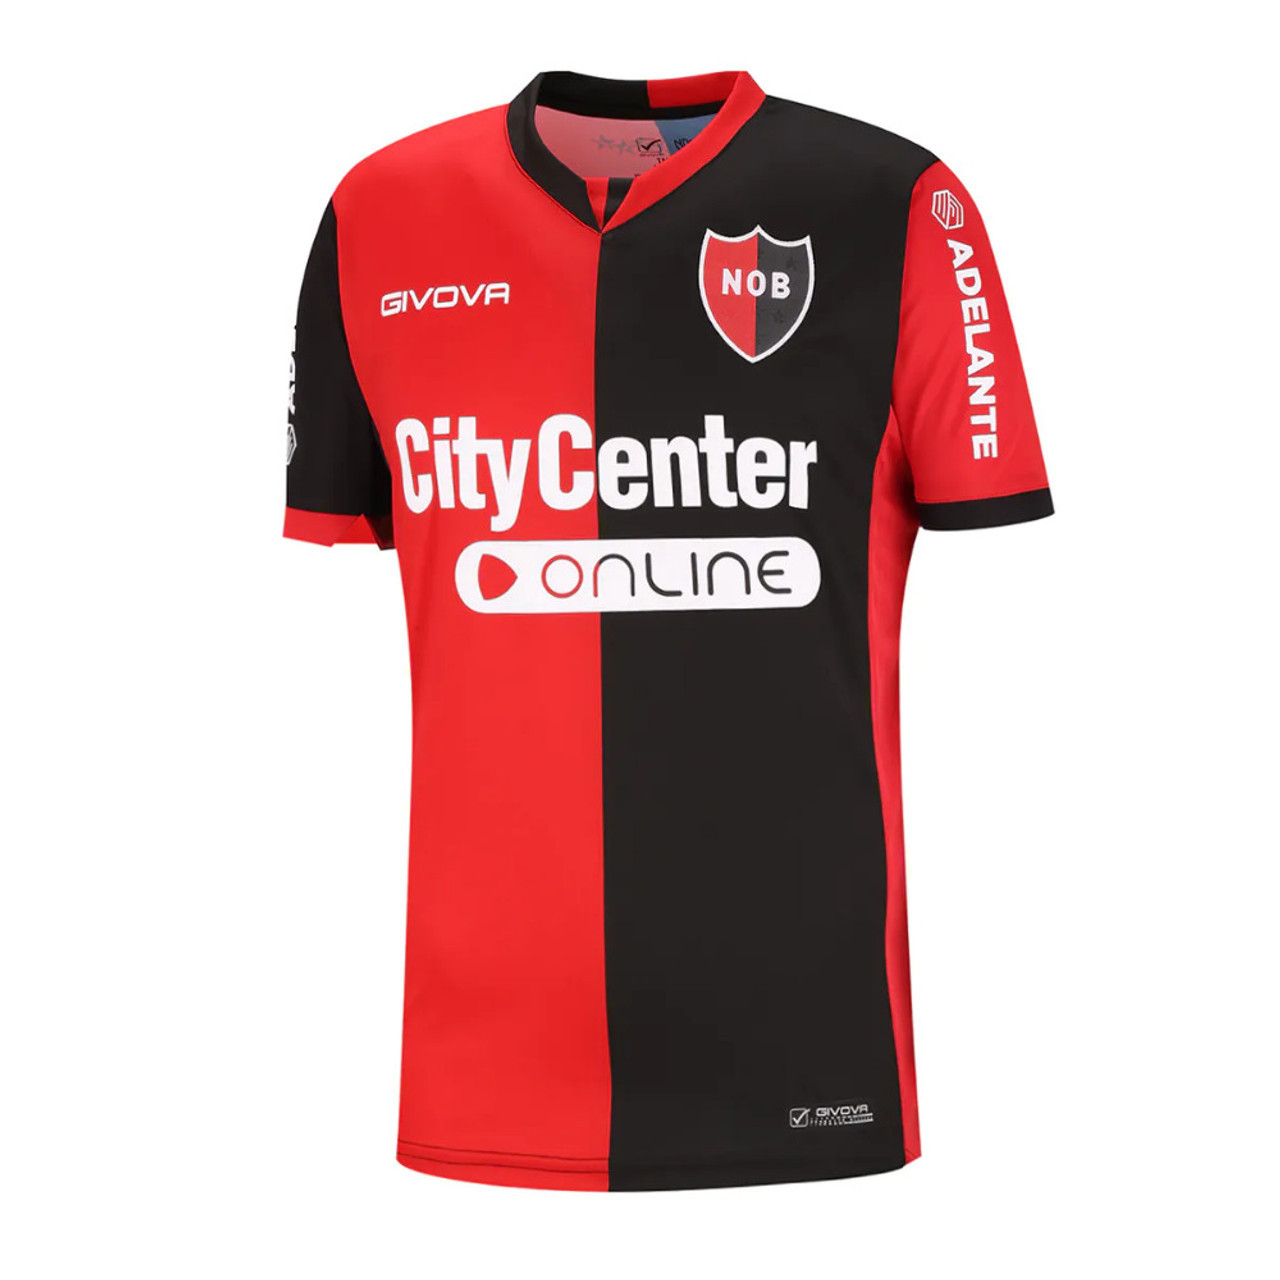 Camiseta Puma de Independiente 2016 (OFICIAL)